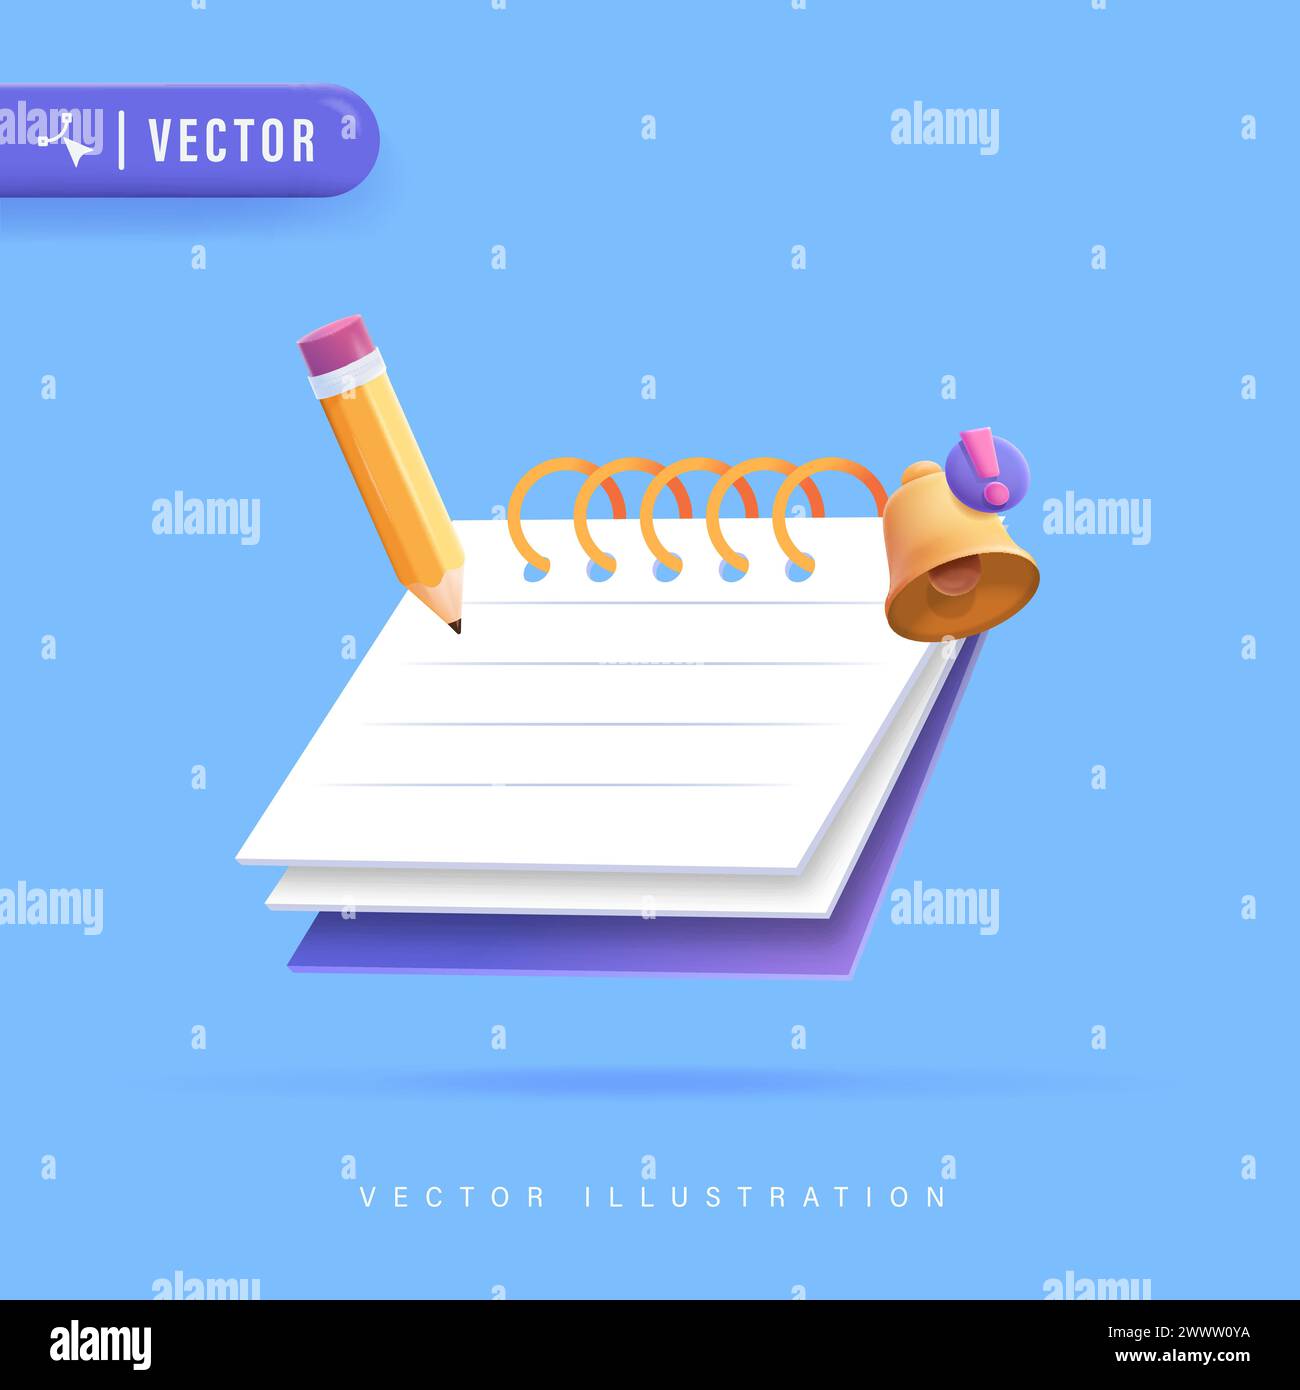 Realistisches 3D-Notizbuchdesign mit Bleistift und Glocke Vektor-Illustration. To-do-Checkliste für die Aufgabenverwaltung in der Zwischenablage in Papier Stock Vektor